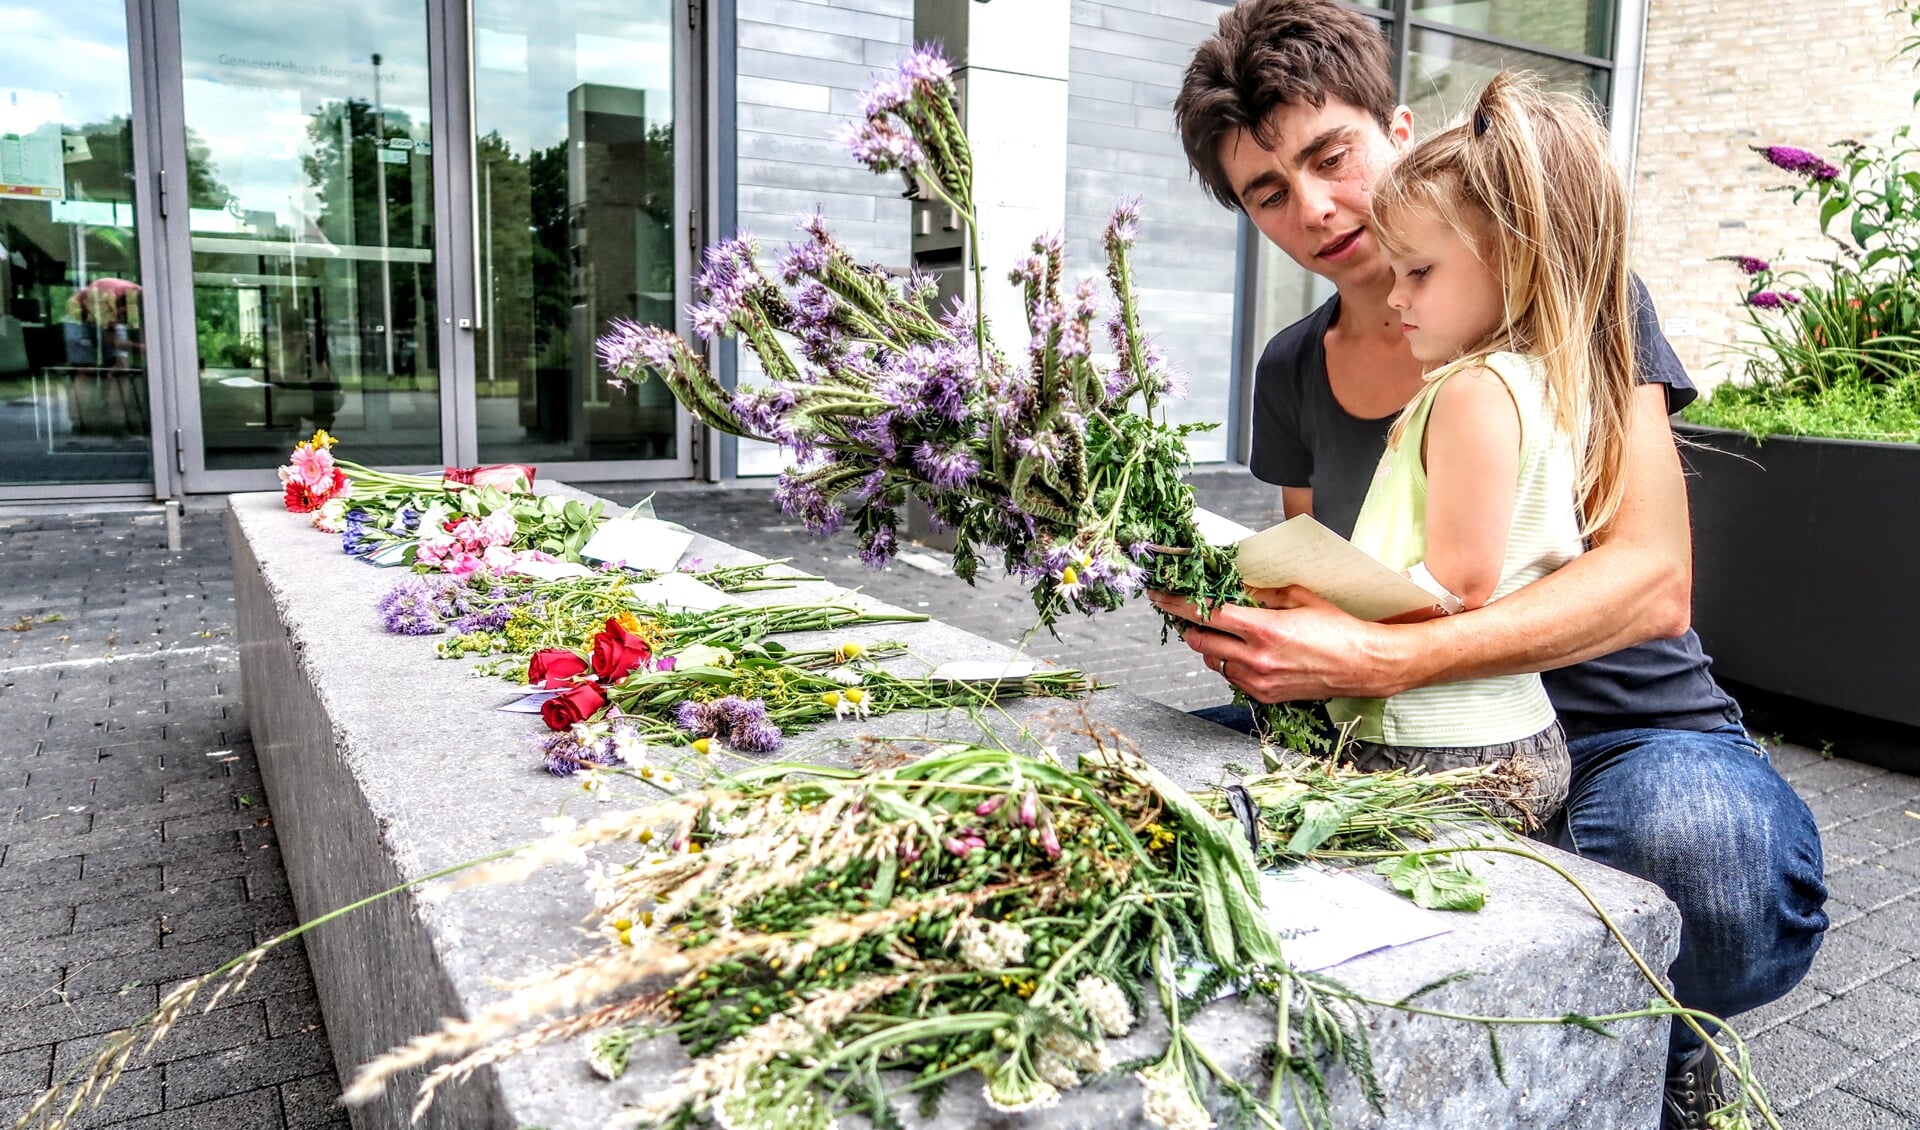 Maaike Kuyk uit Vorden kwam zondag samen met haar dochtertje Elaine naar het gemeentehuis van Bronckhorst in Hengelo om met bloemen haar stem tegen de coronamaatregelen te laten horen. Foto: Luuk Stam